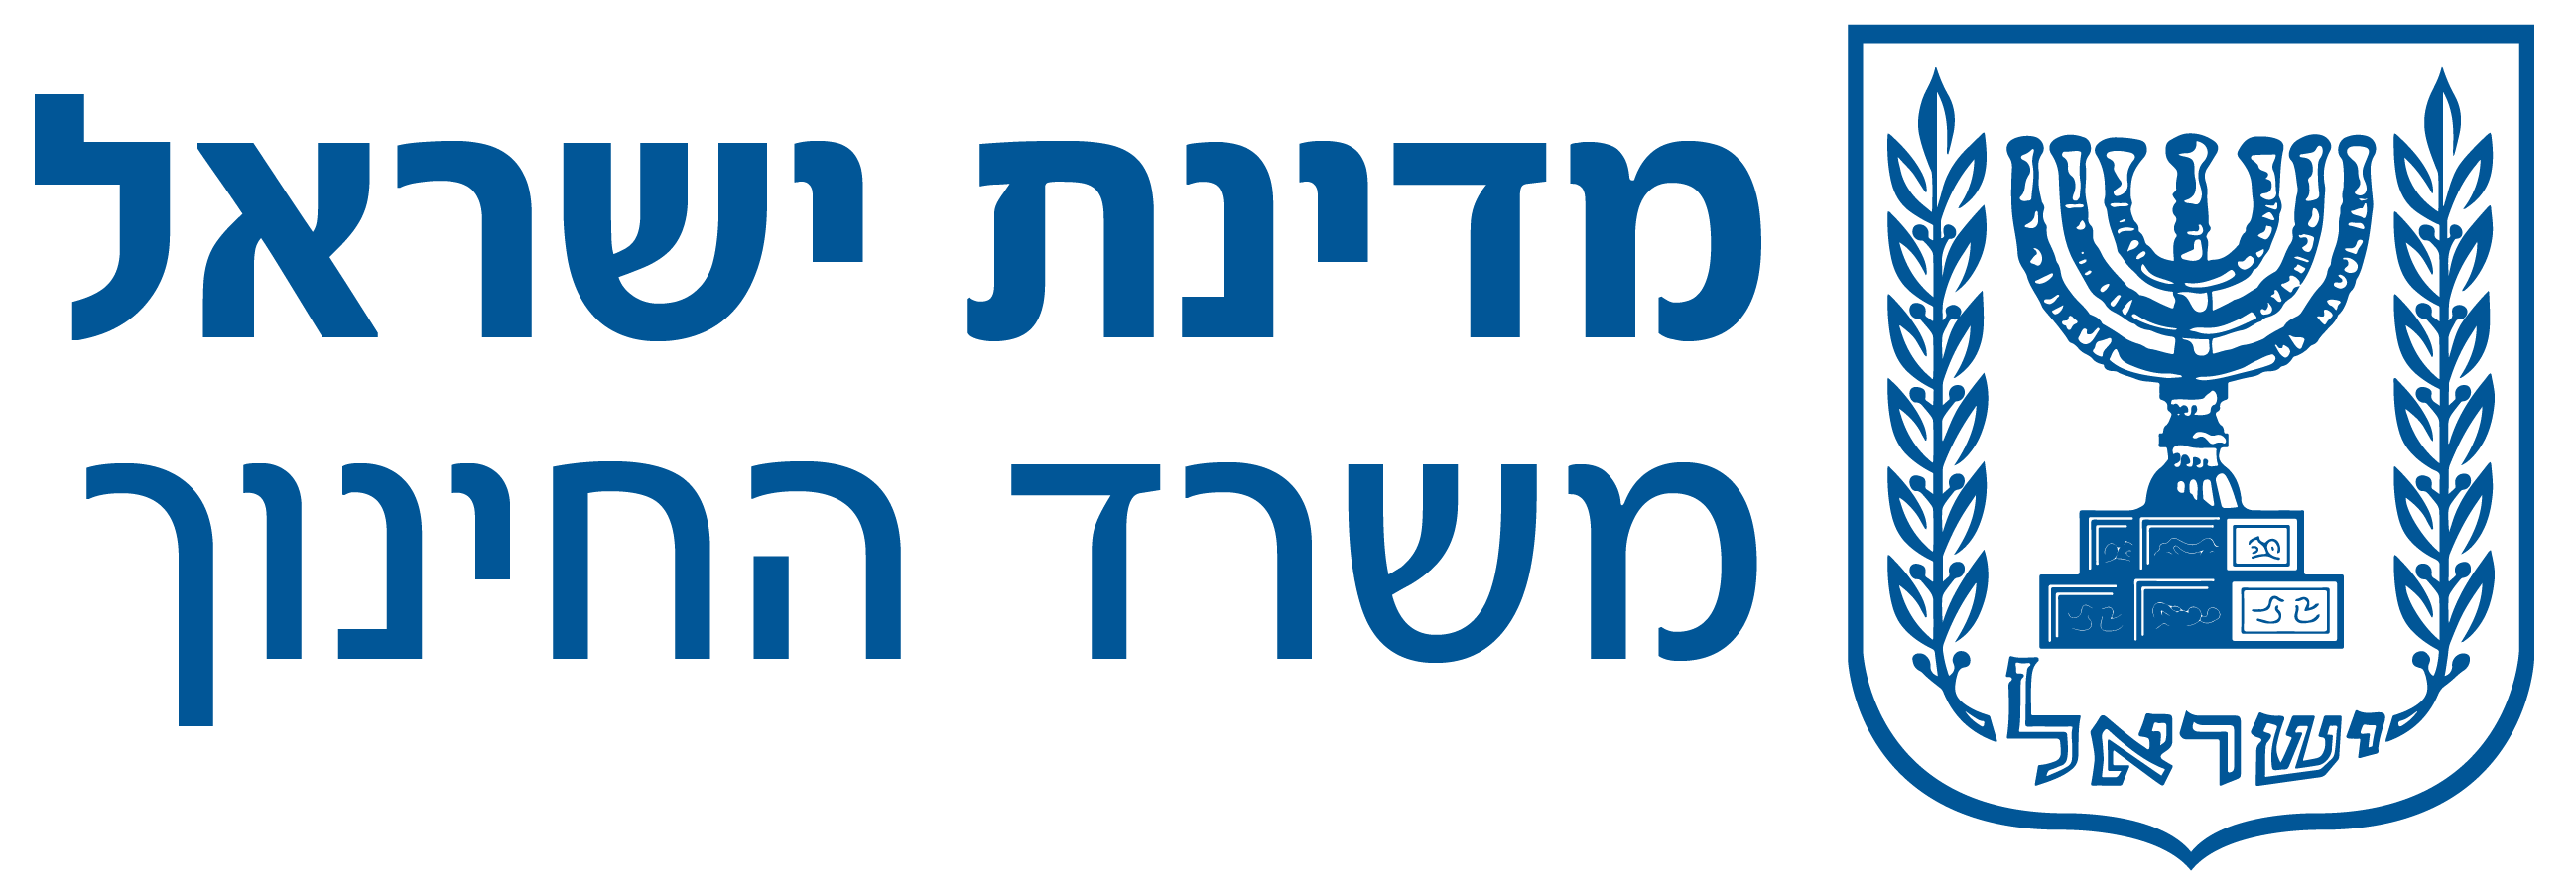 לוגו-משרד-החינוך